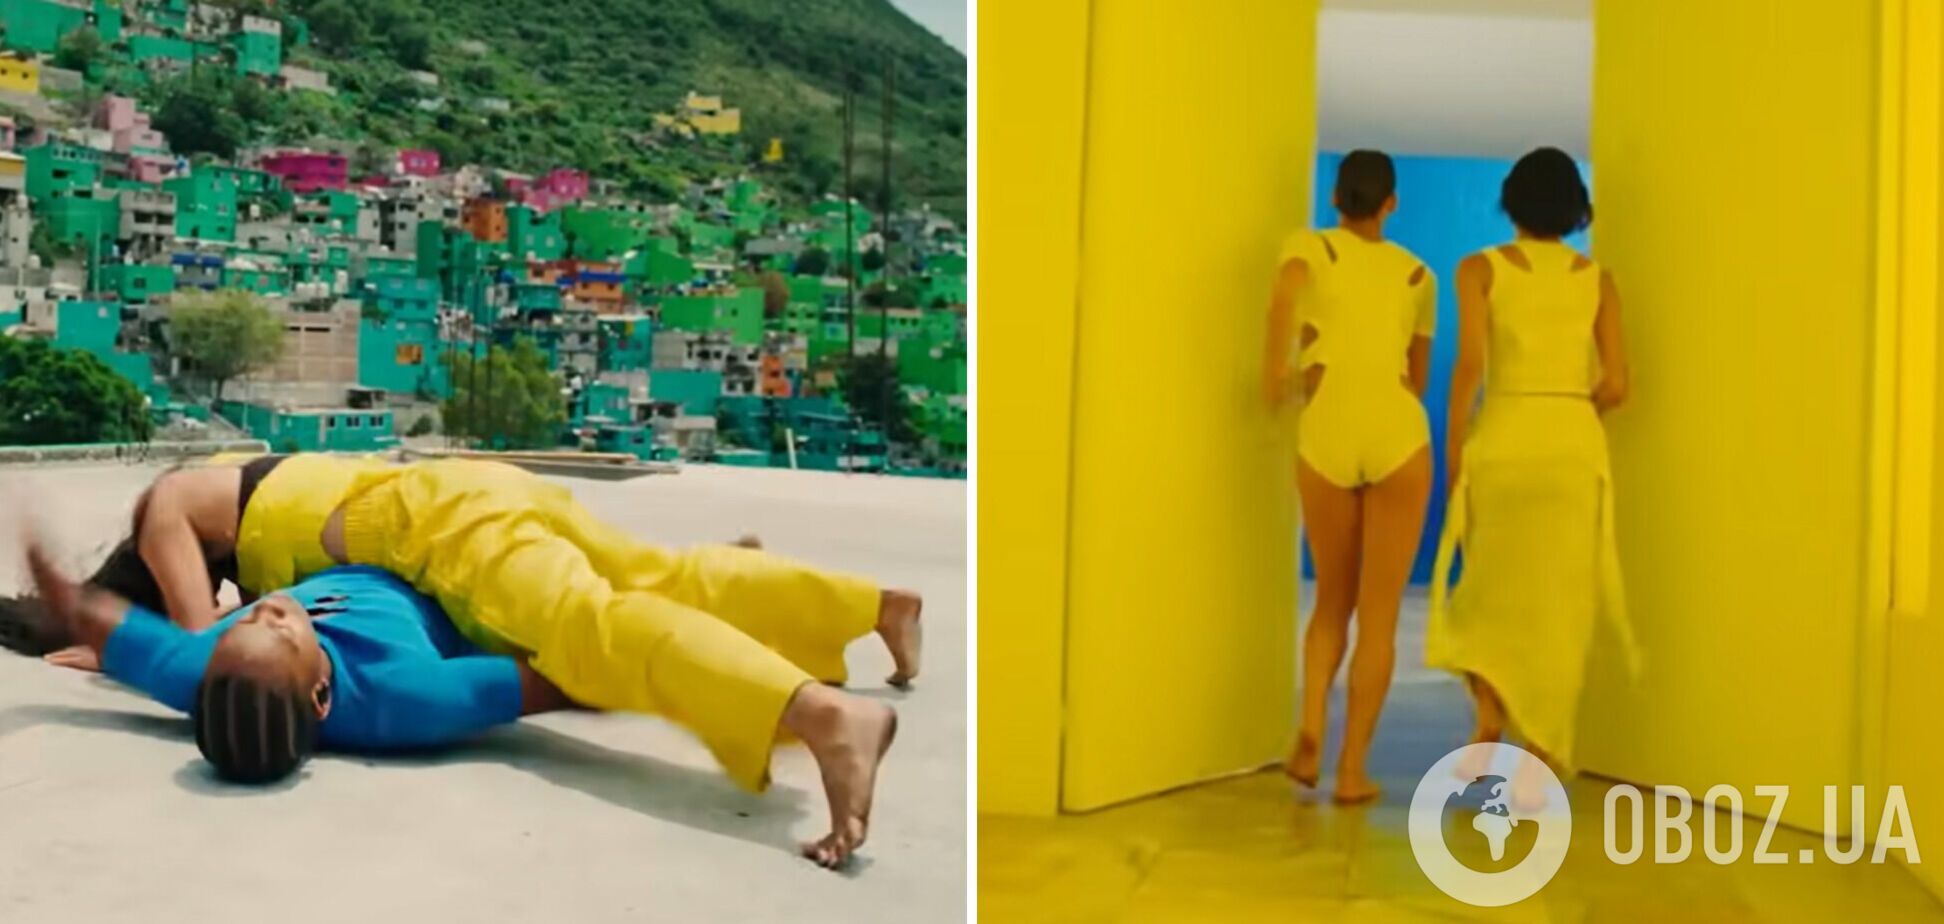 Українська режисерка Таня Муіньо зняла кліп у синьо-жовтих кольорах для Брітні Спірс та Елтона Джона